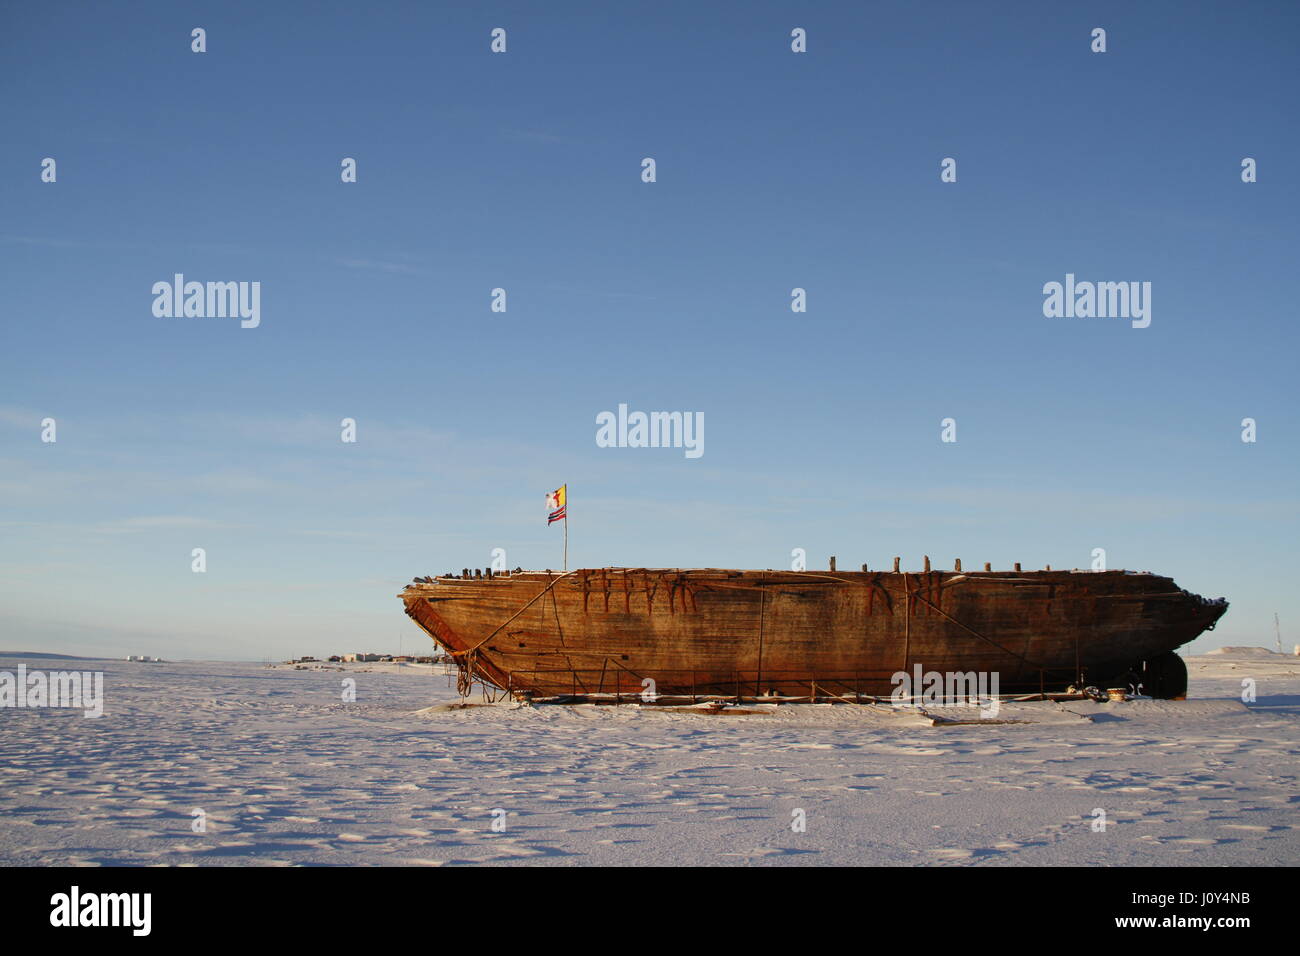 Los restos del naufragio Maud cerca de Cambridge Bay, nombrado por la Reina Maud de Noruega, un buque construido por Roald Amundsen en su expedición al Ártico. Foto de stock